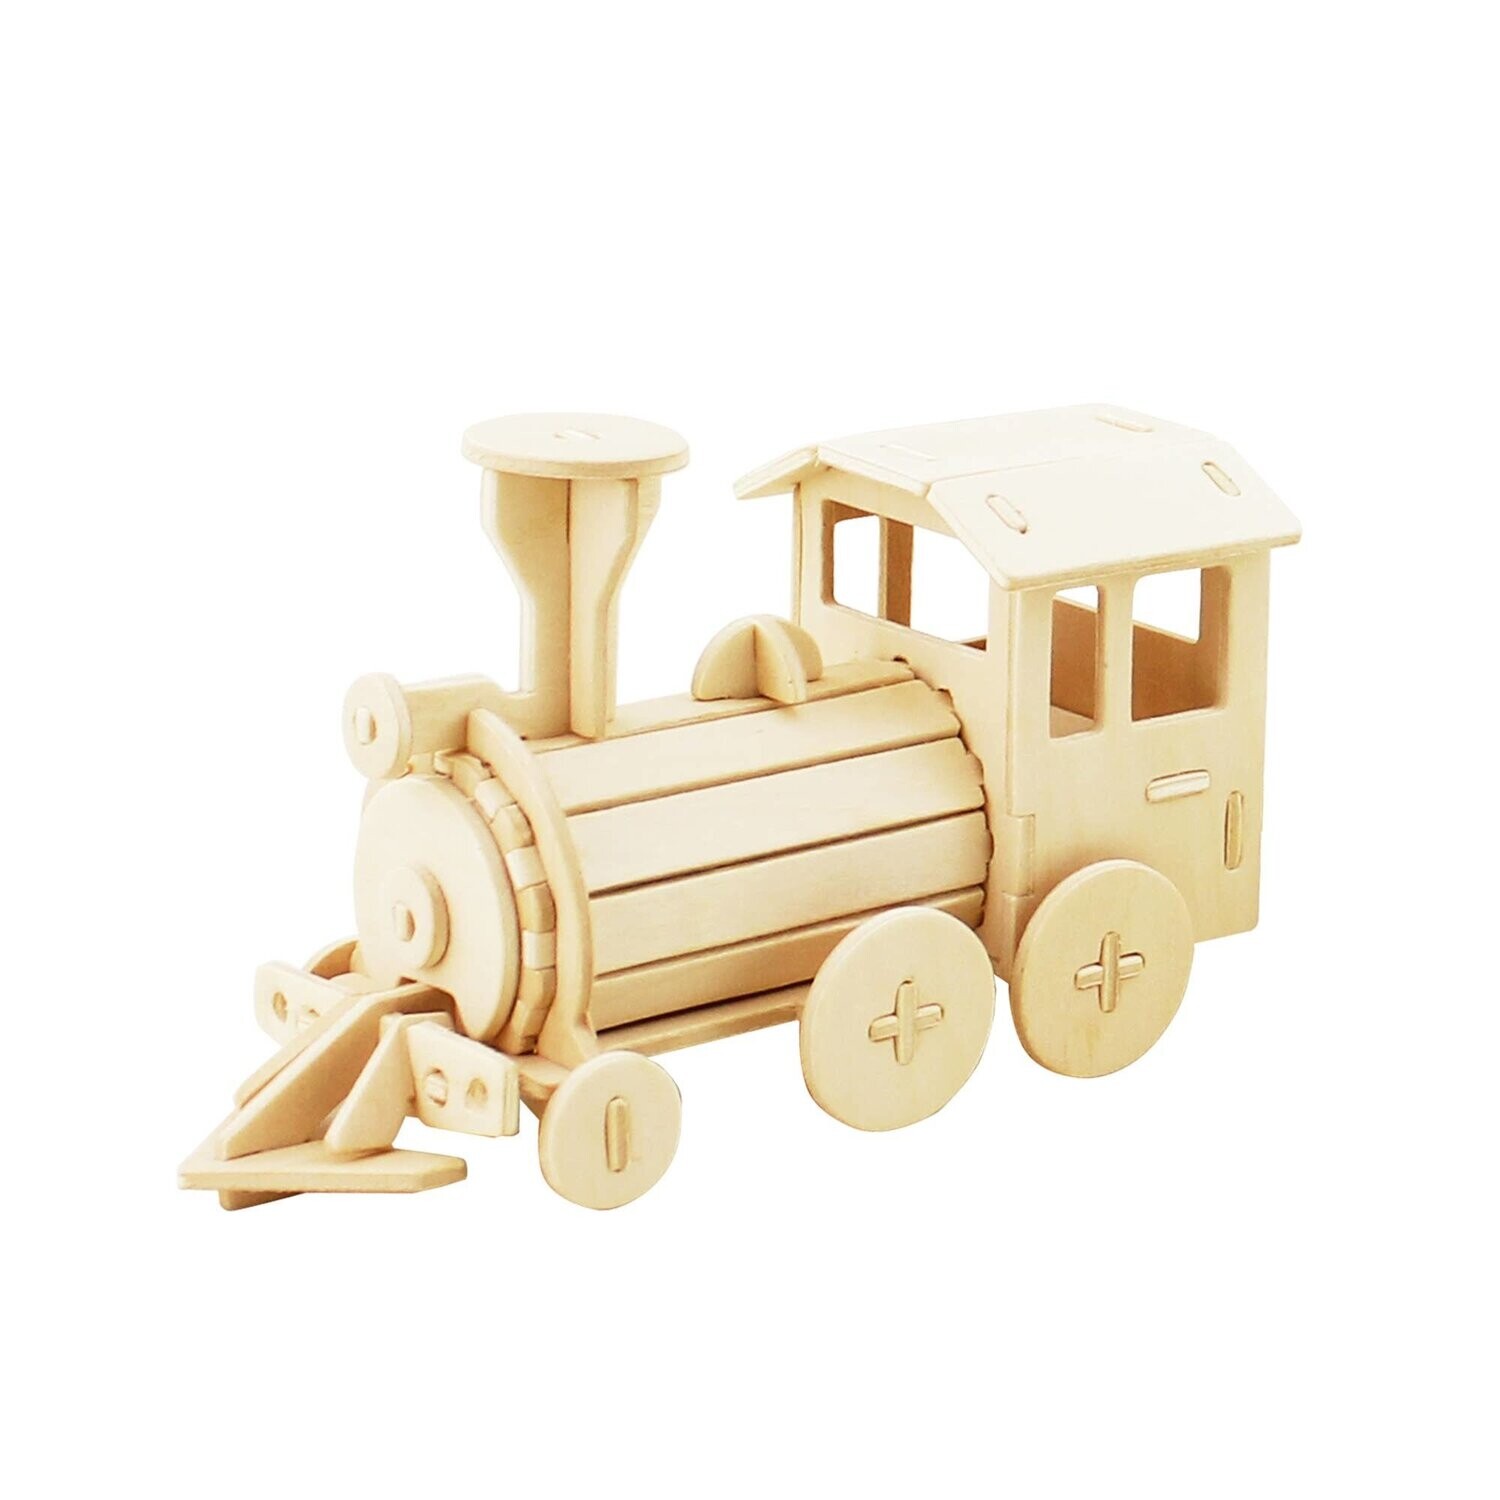 Locomotive 3D Wooden Puzzle